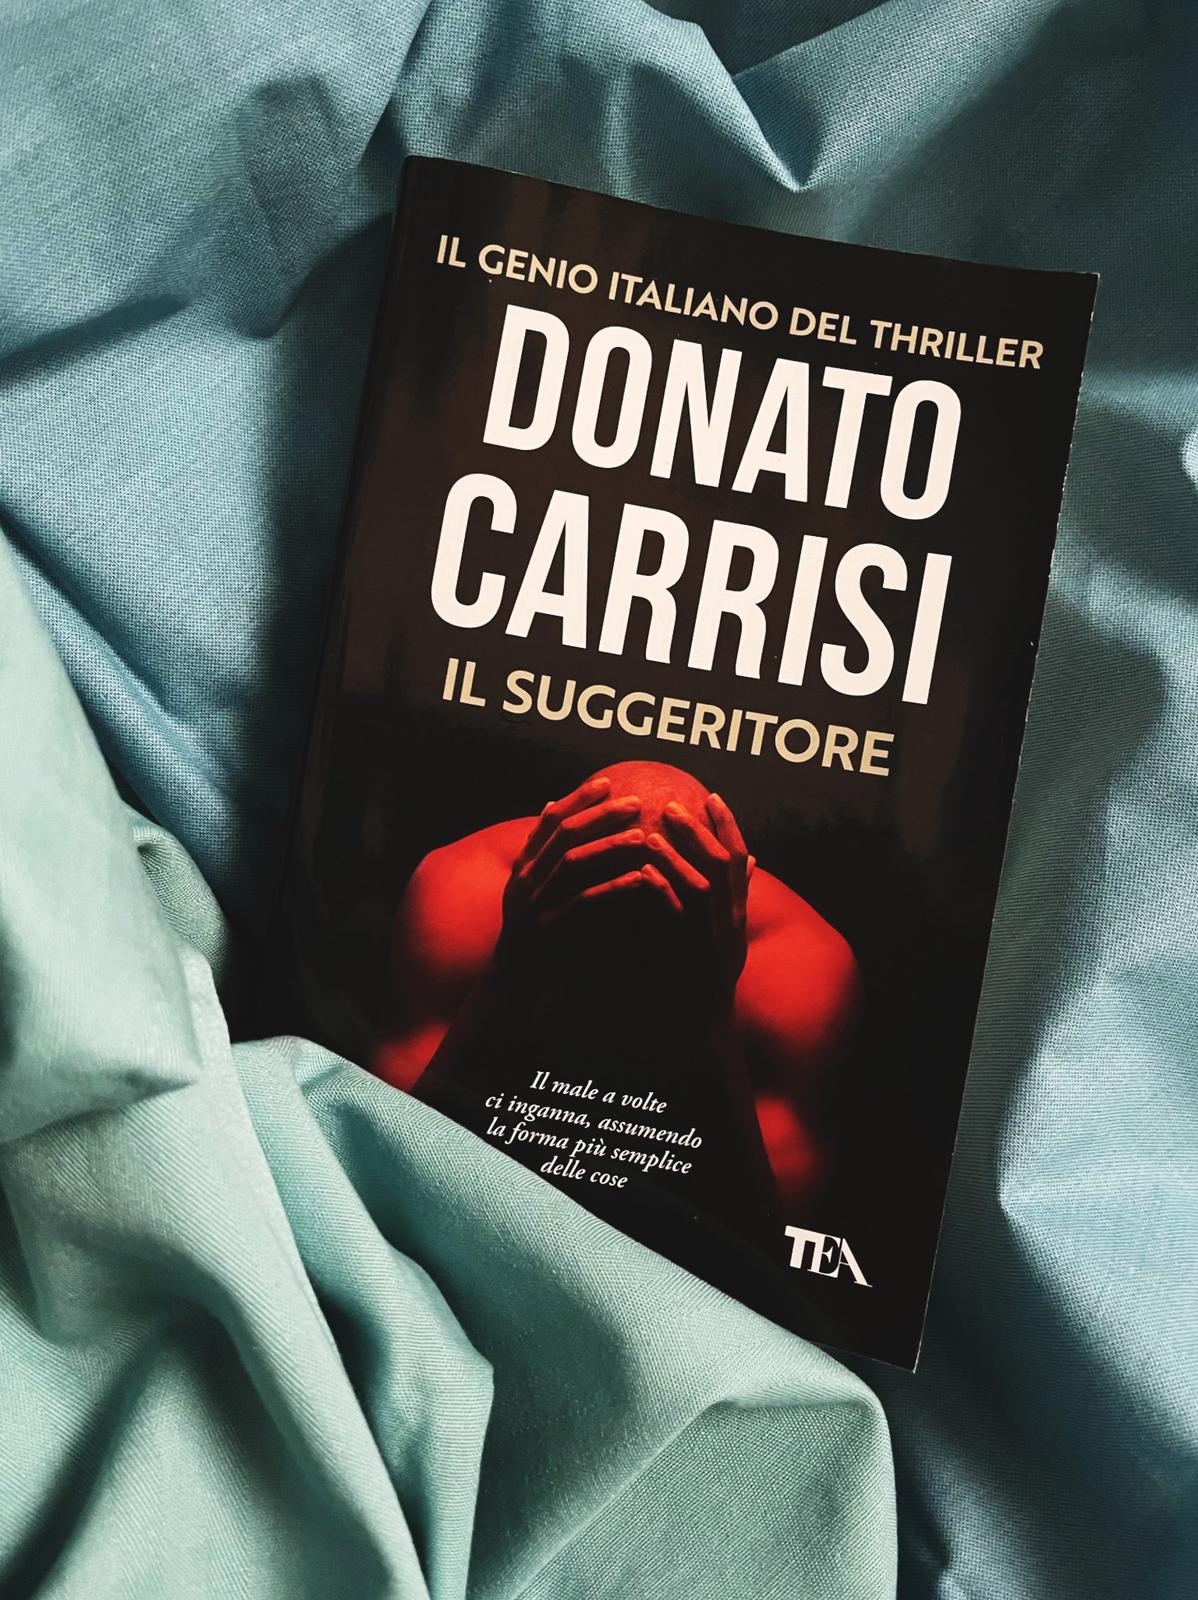 Il suggeritore Donato Carrisi recensione